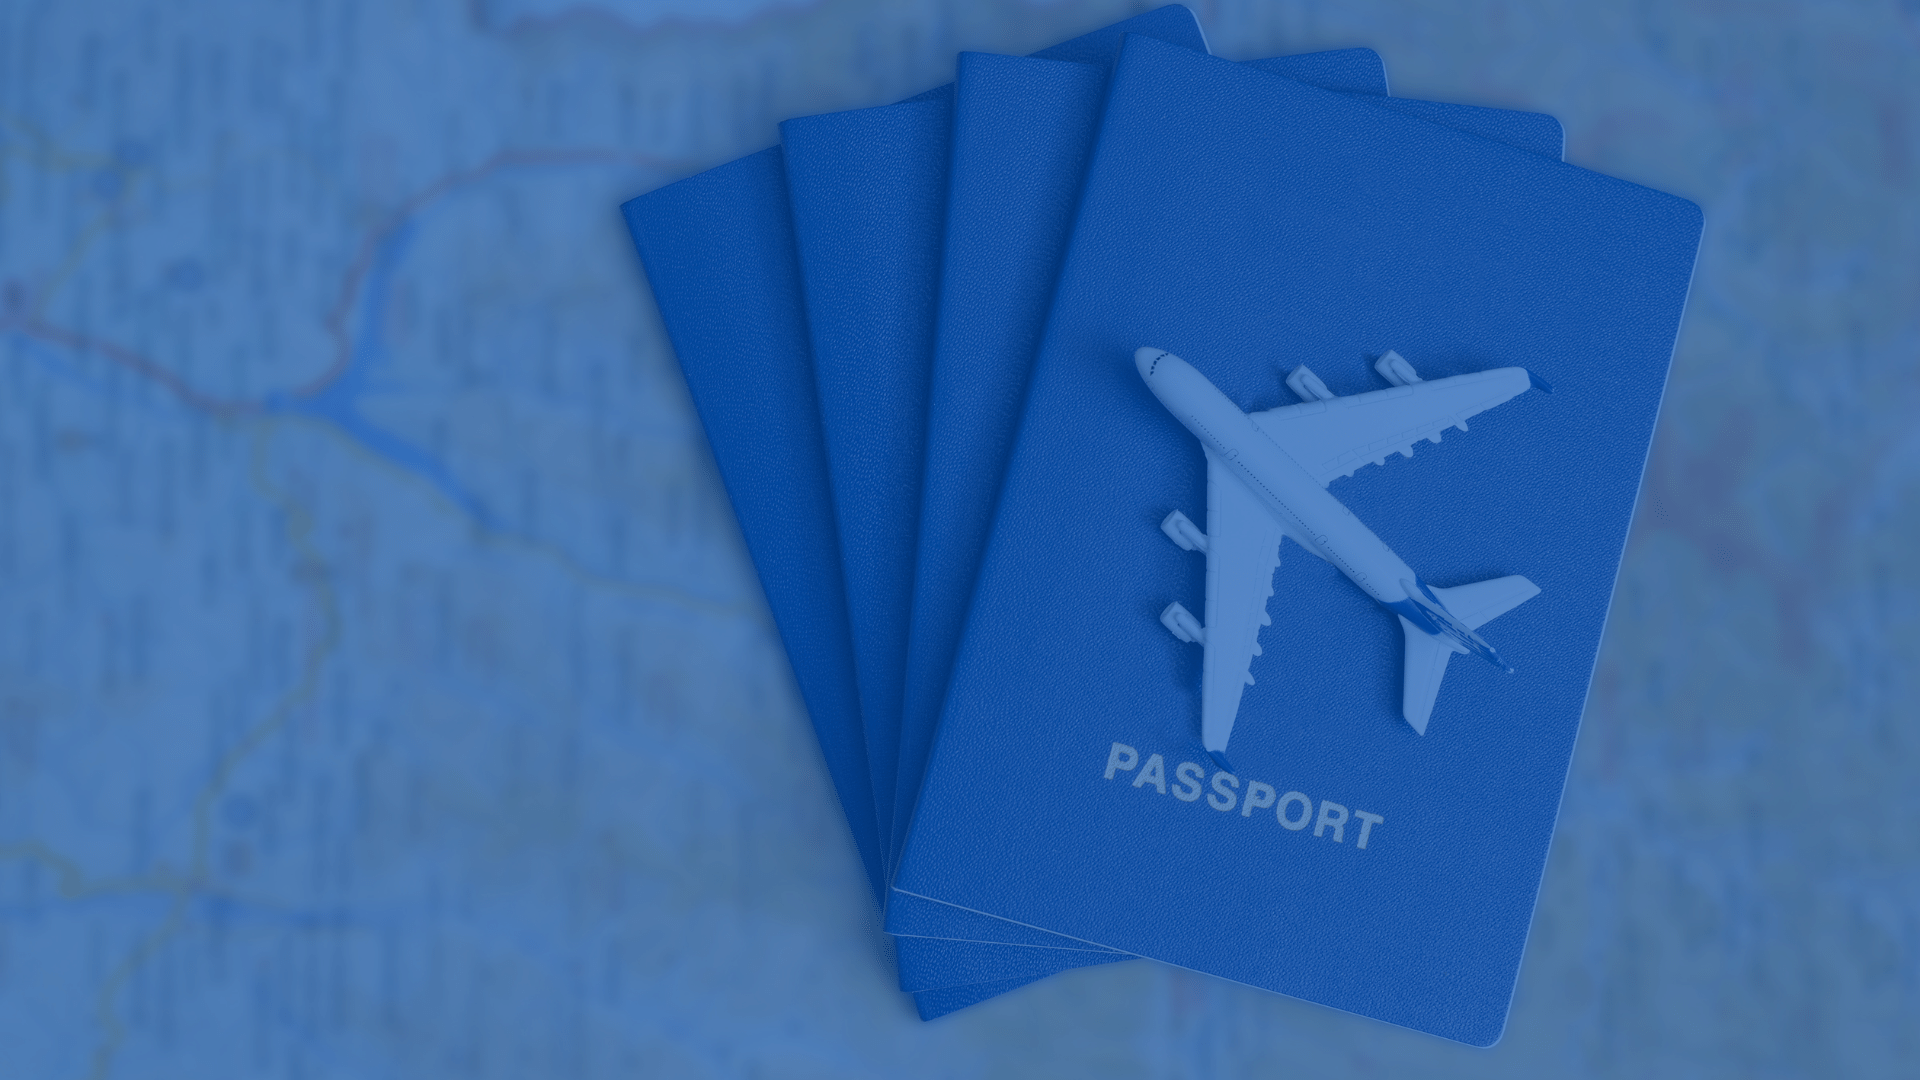 A plane mounted on passports